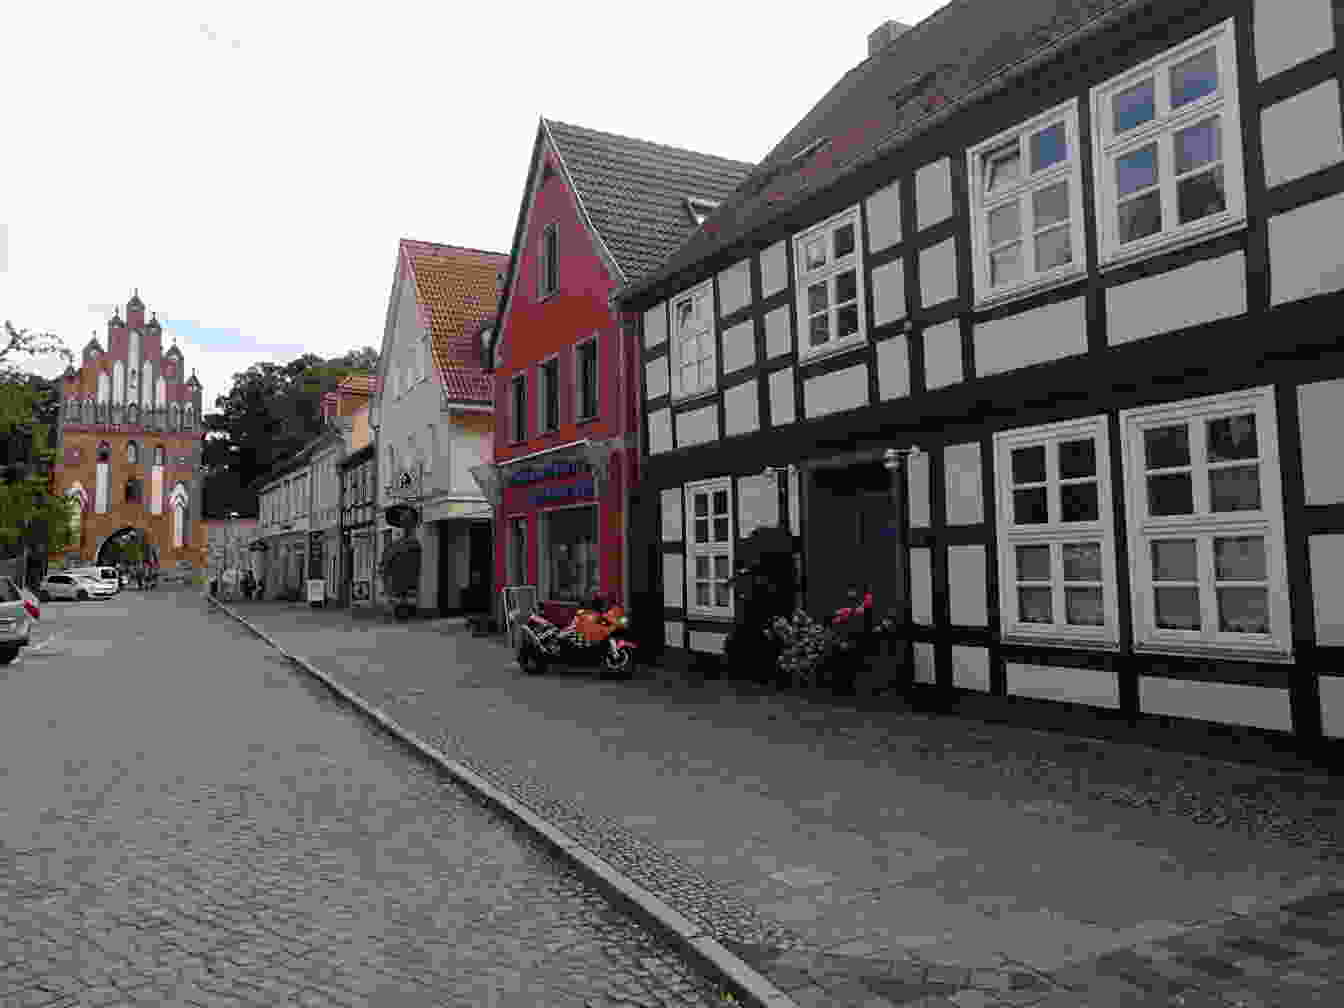 Bild der Stadt Neubrandenburg